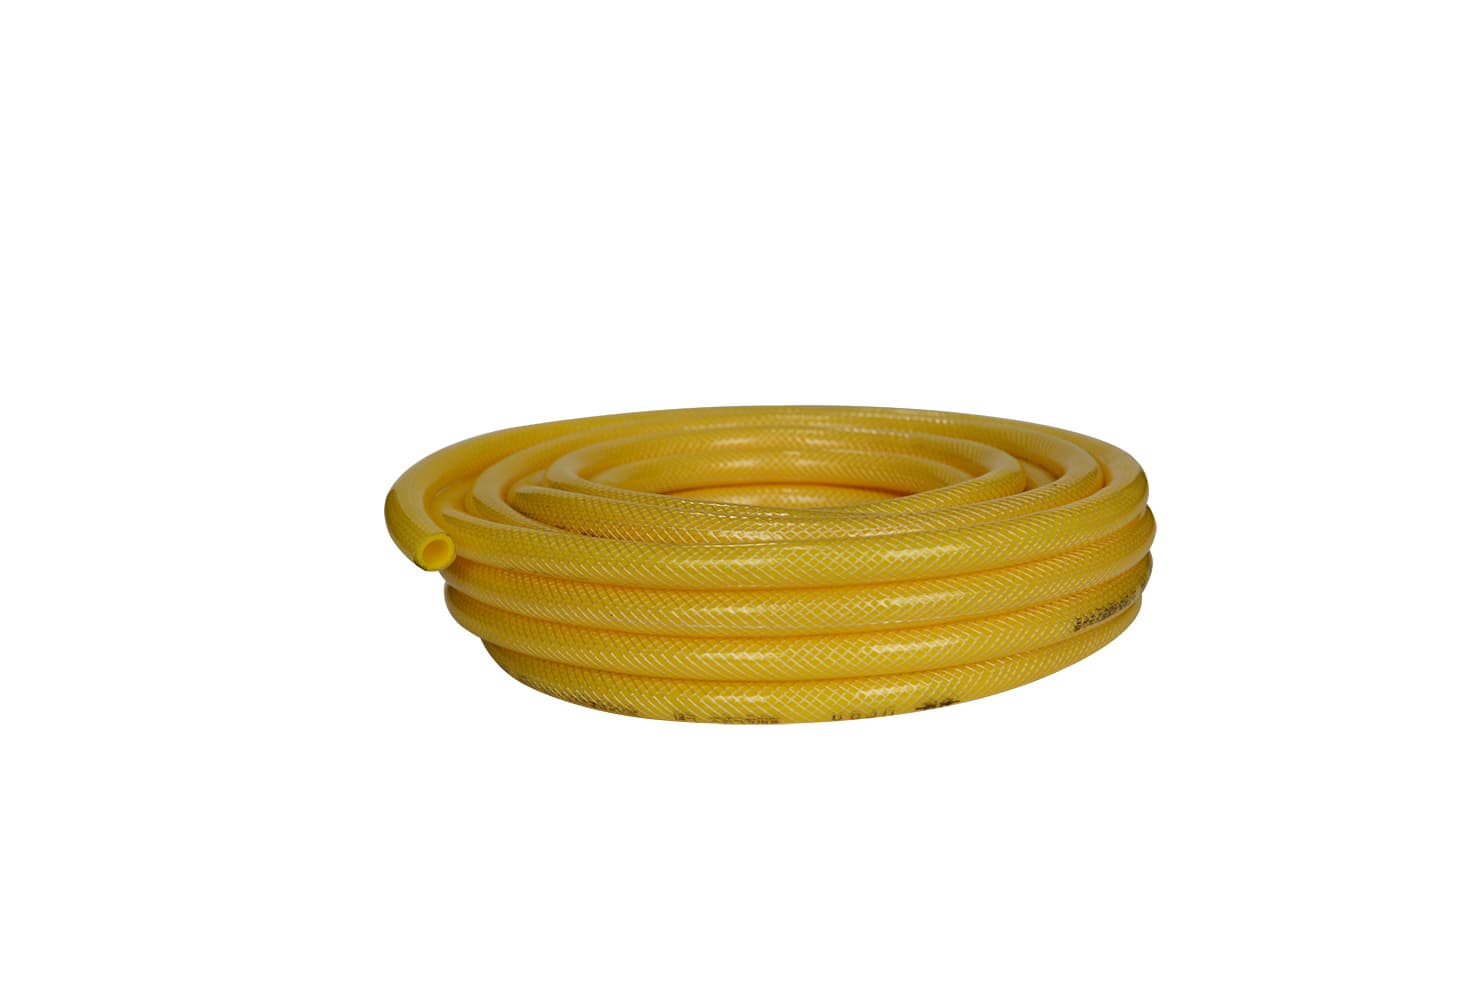 air hose_lpg hose made in pvc material